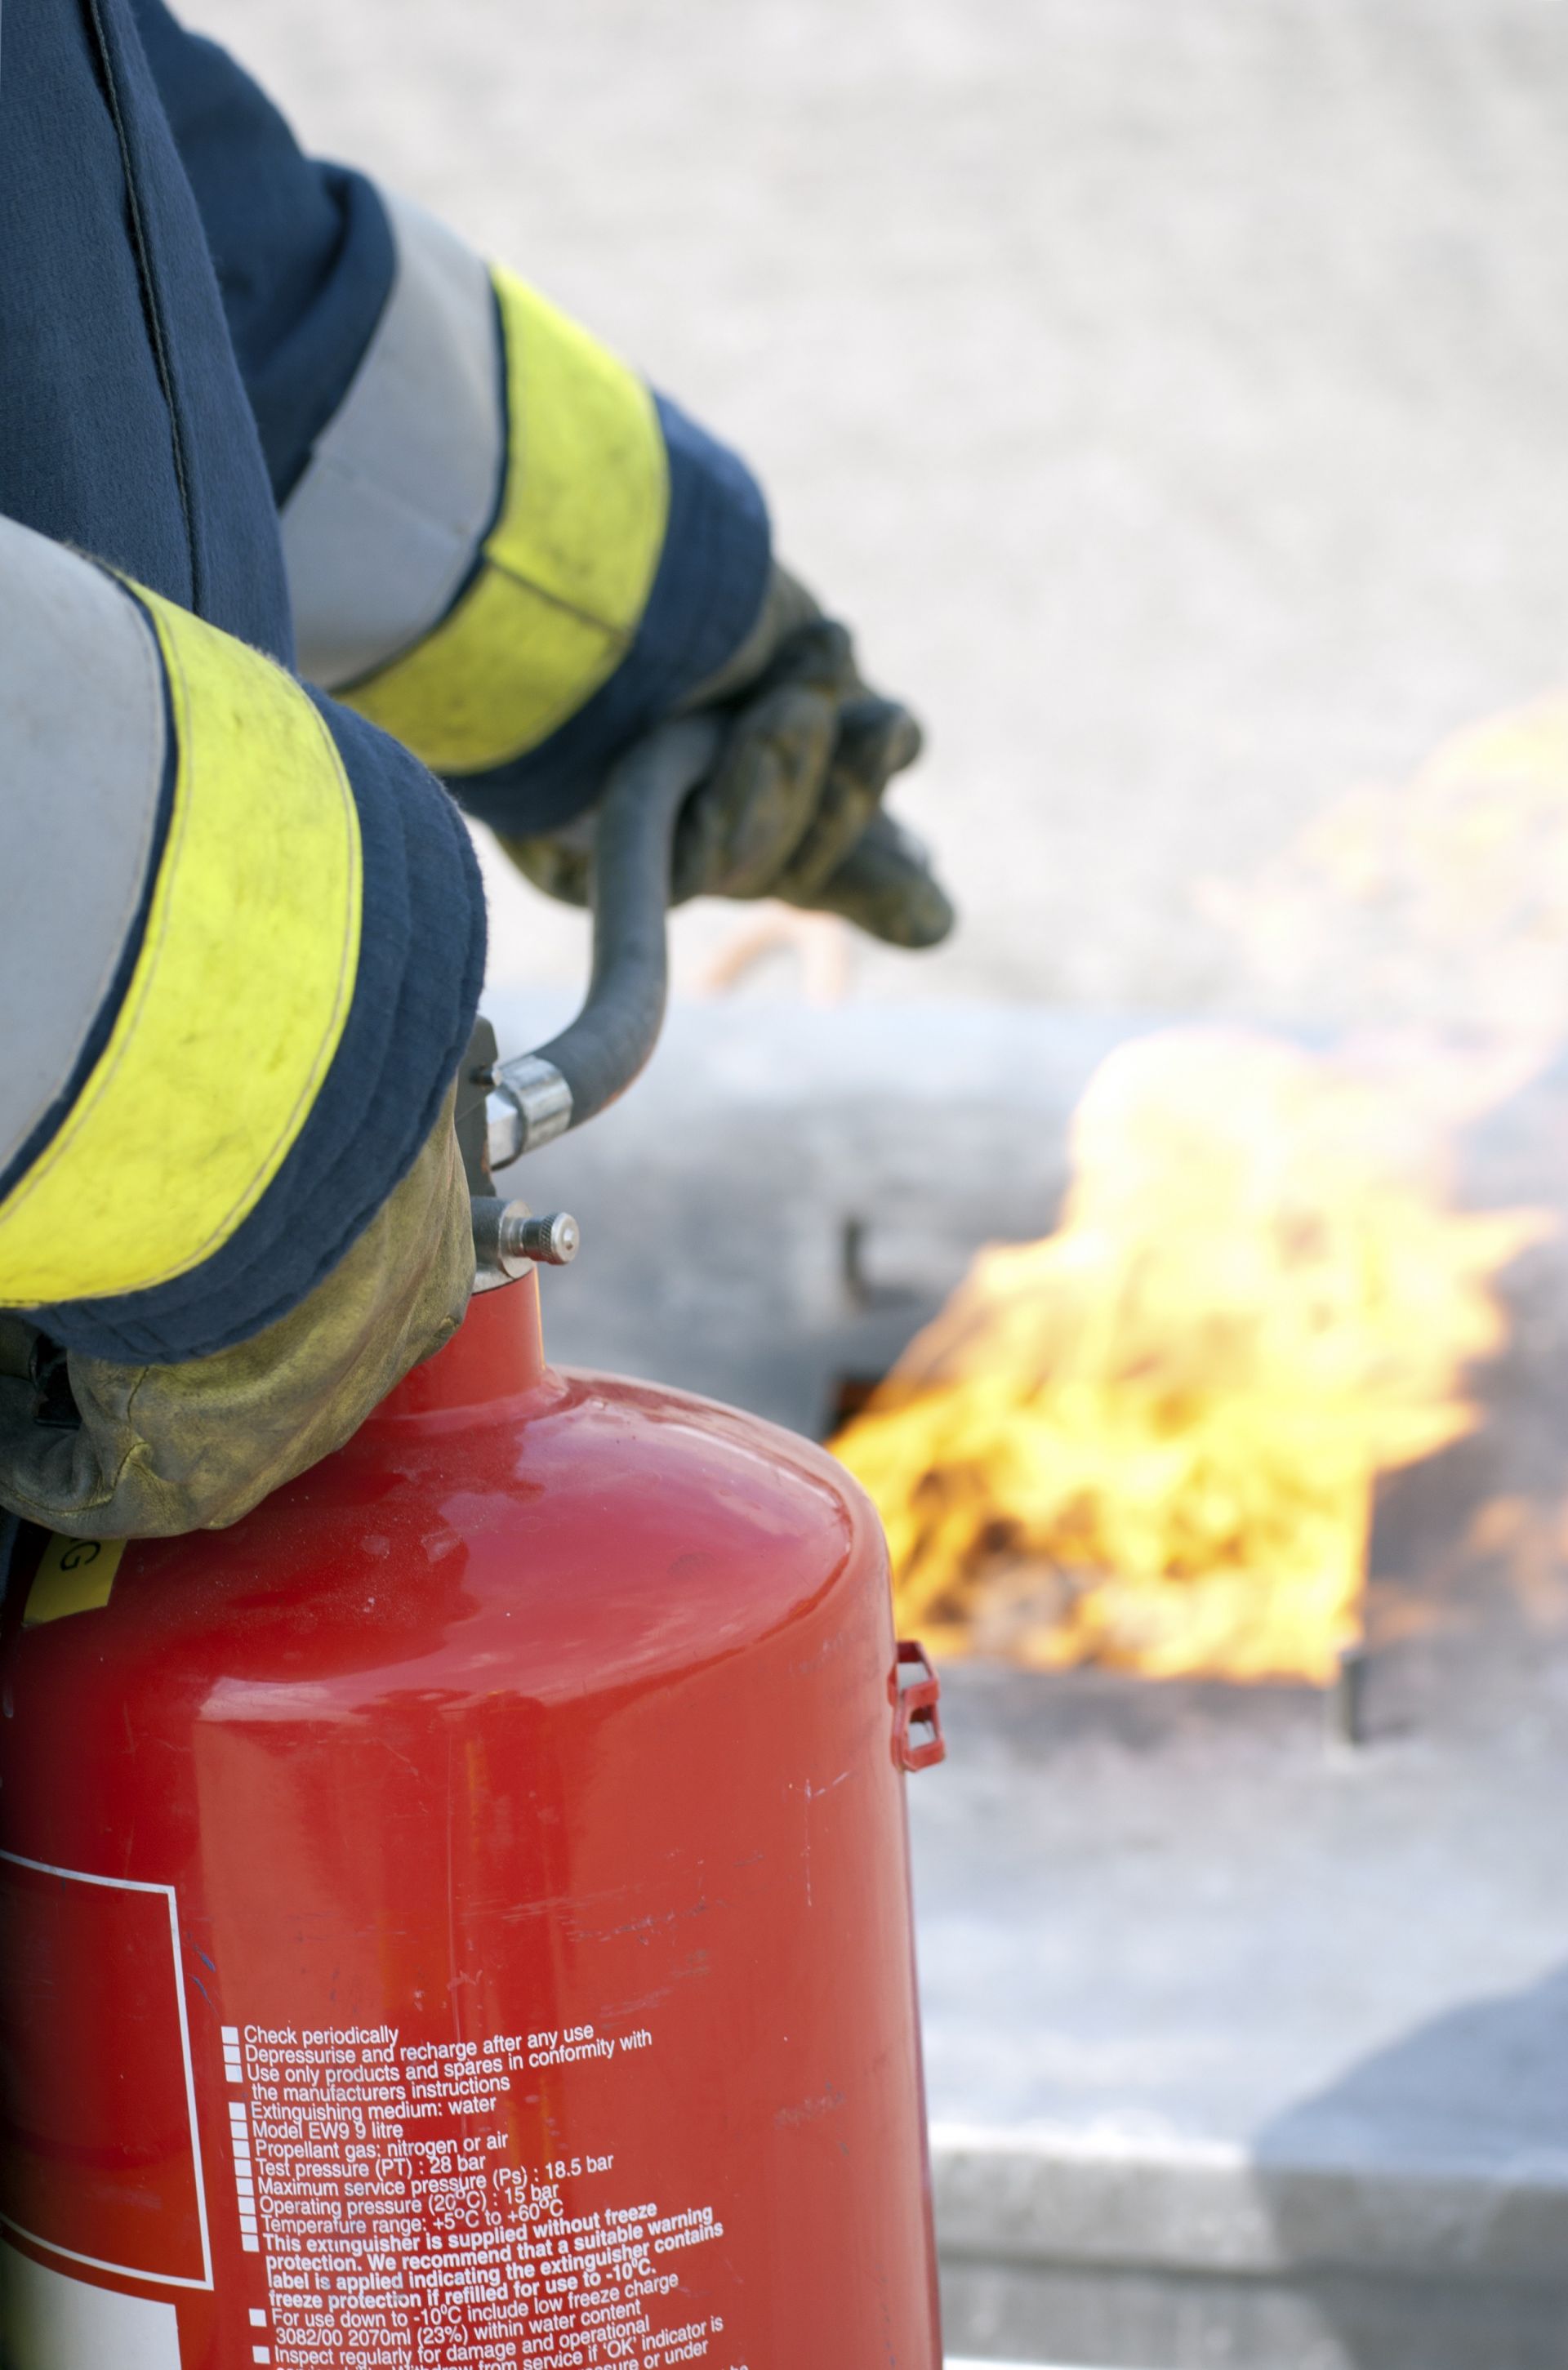 Poptávka na bourání a likvidaci komínu (Požární technika a systémy) - Benešov